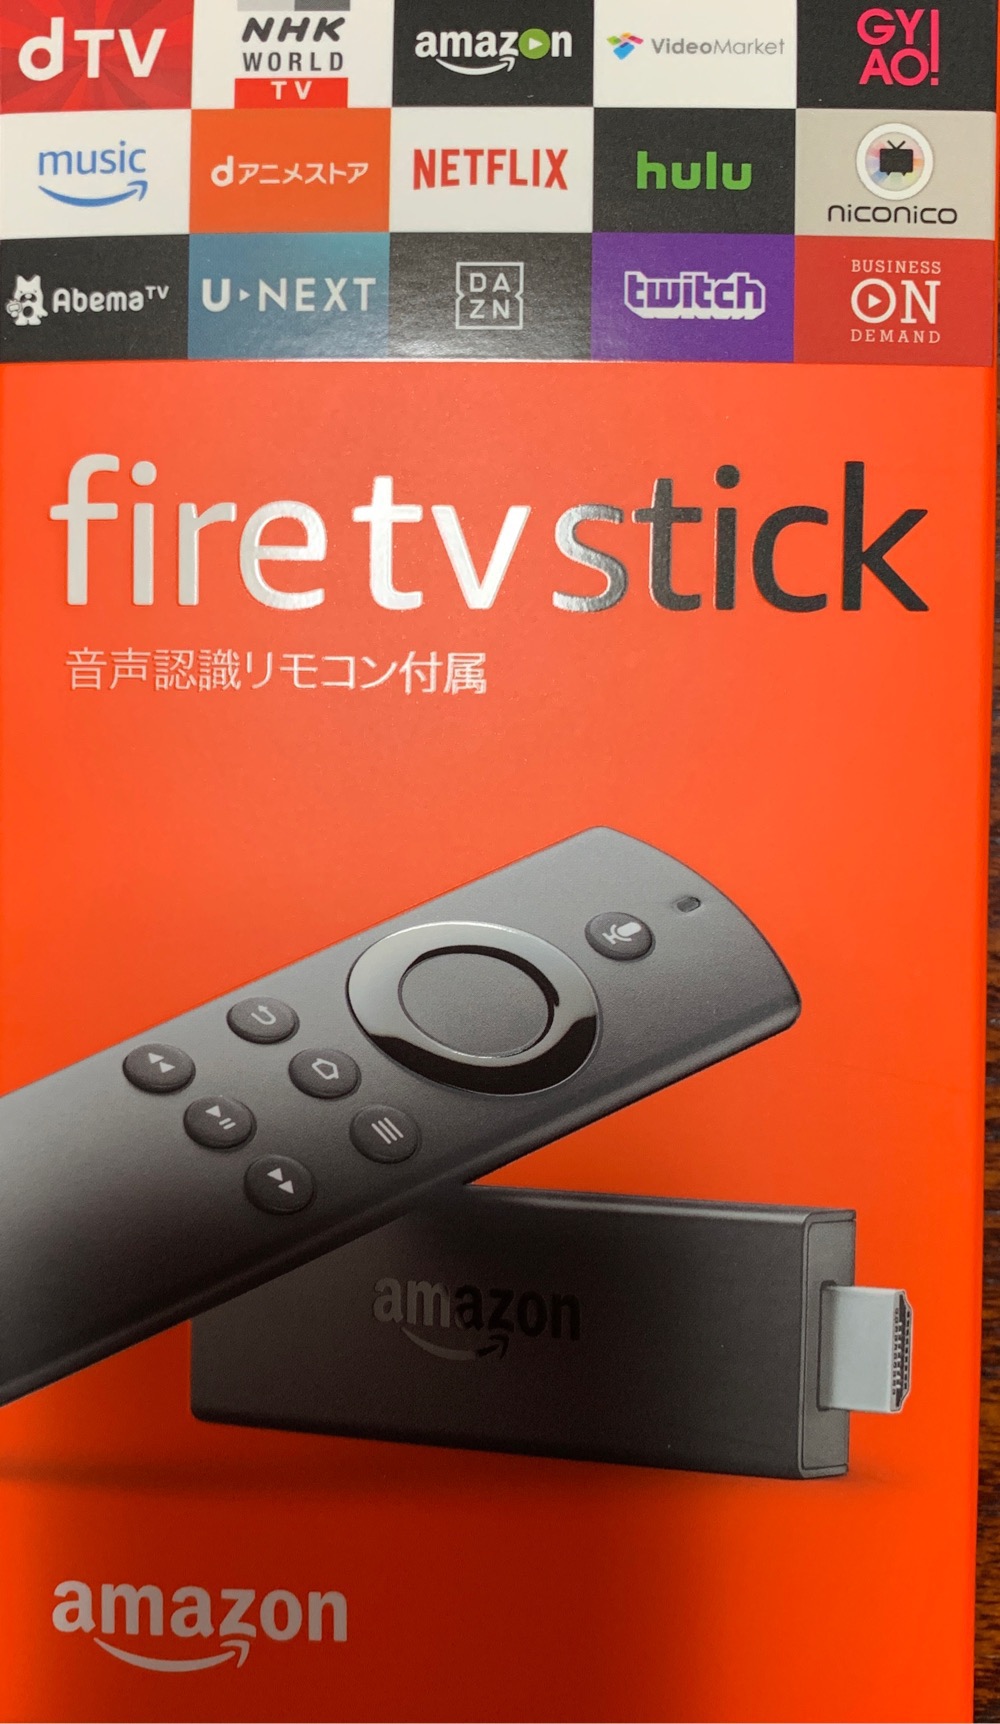 セール中のAmazonFire TV Stick を追加購入し、地元の実家に設置してきて親、感動！